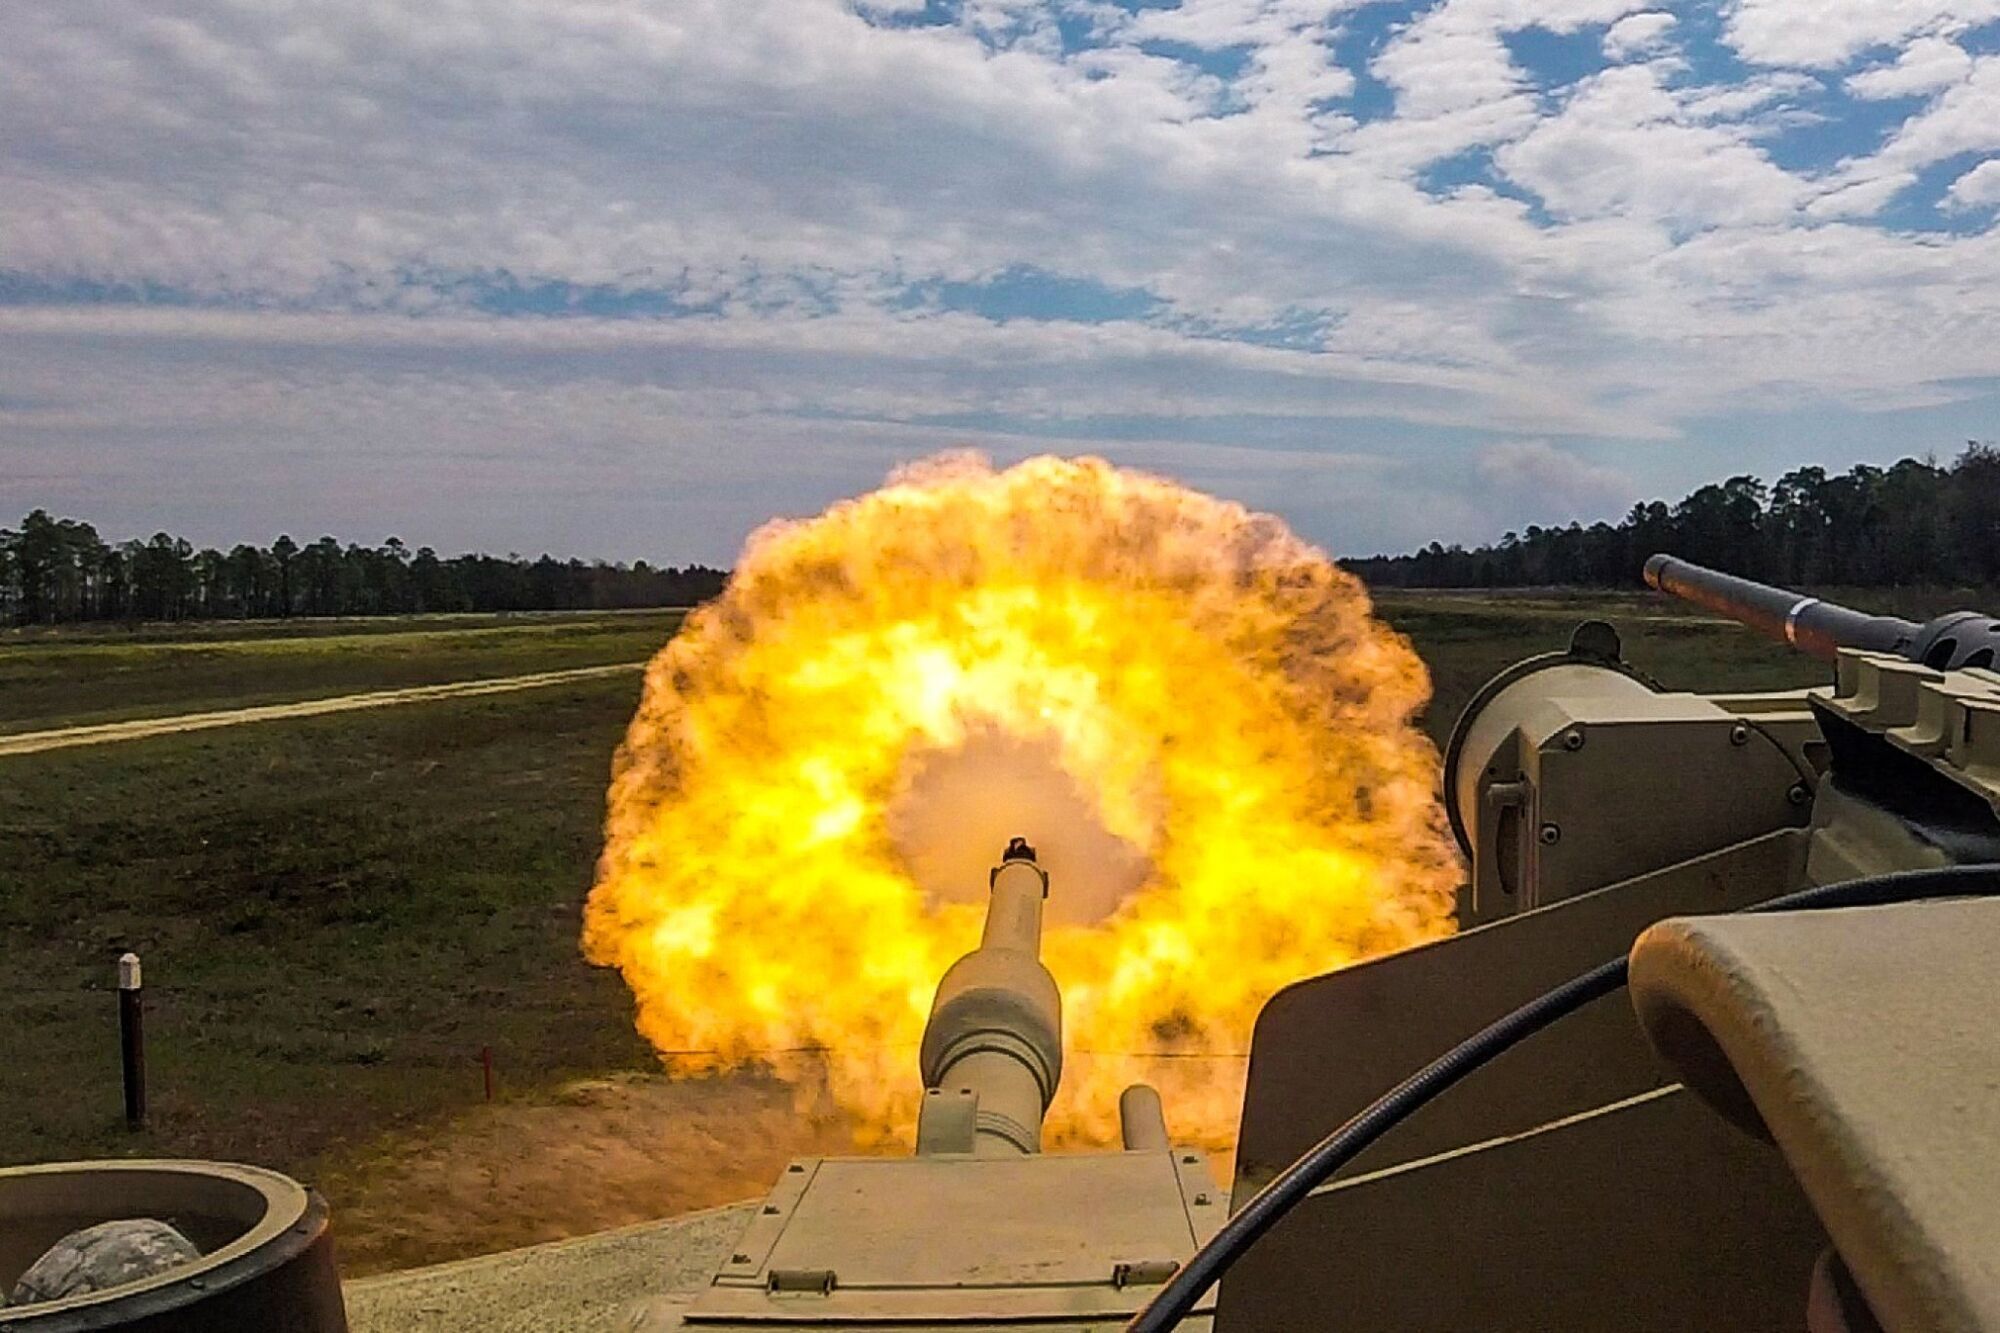 An M1 Abrams tank is firing.